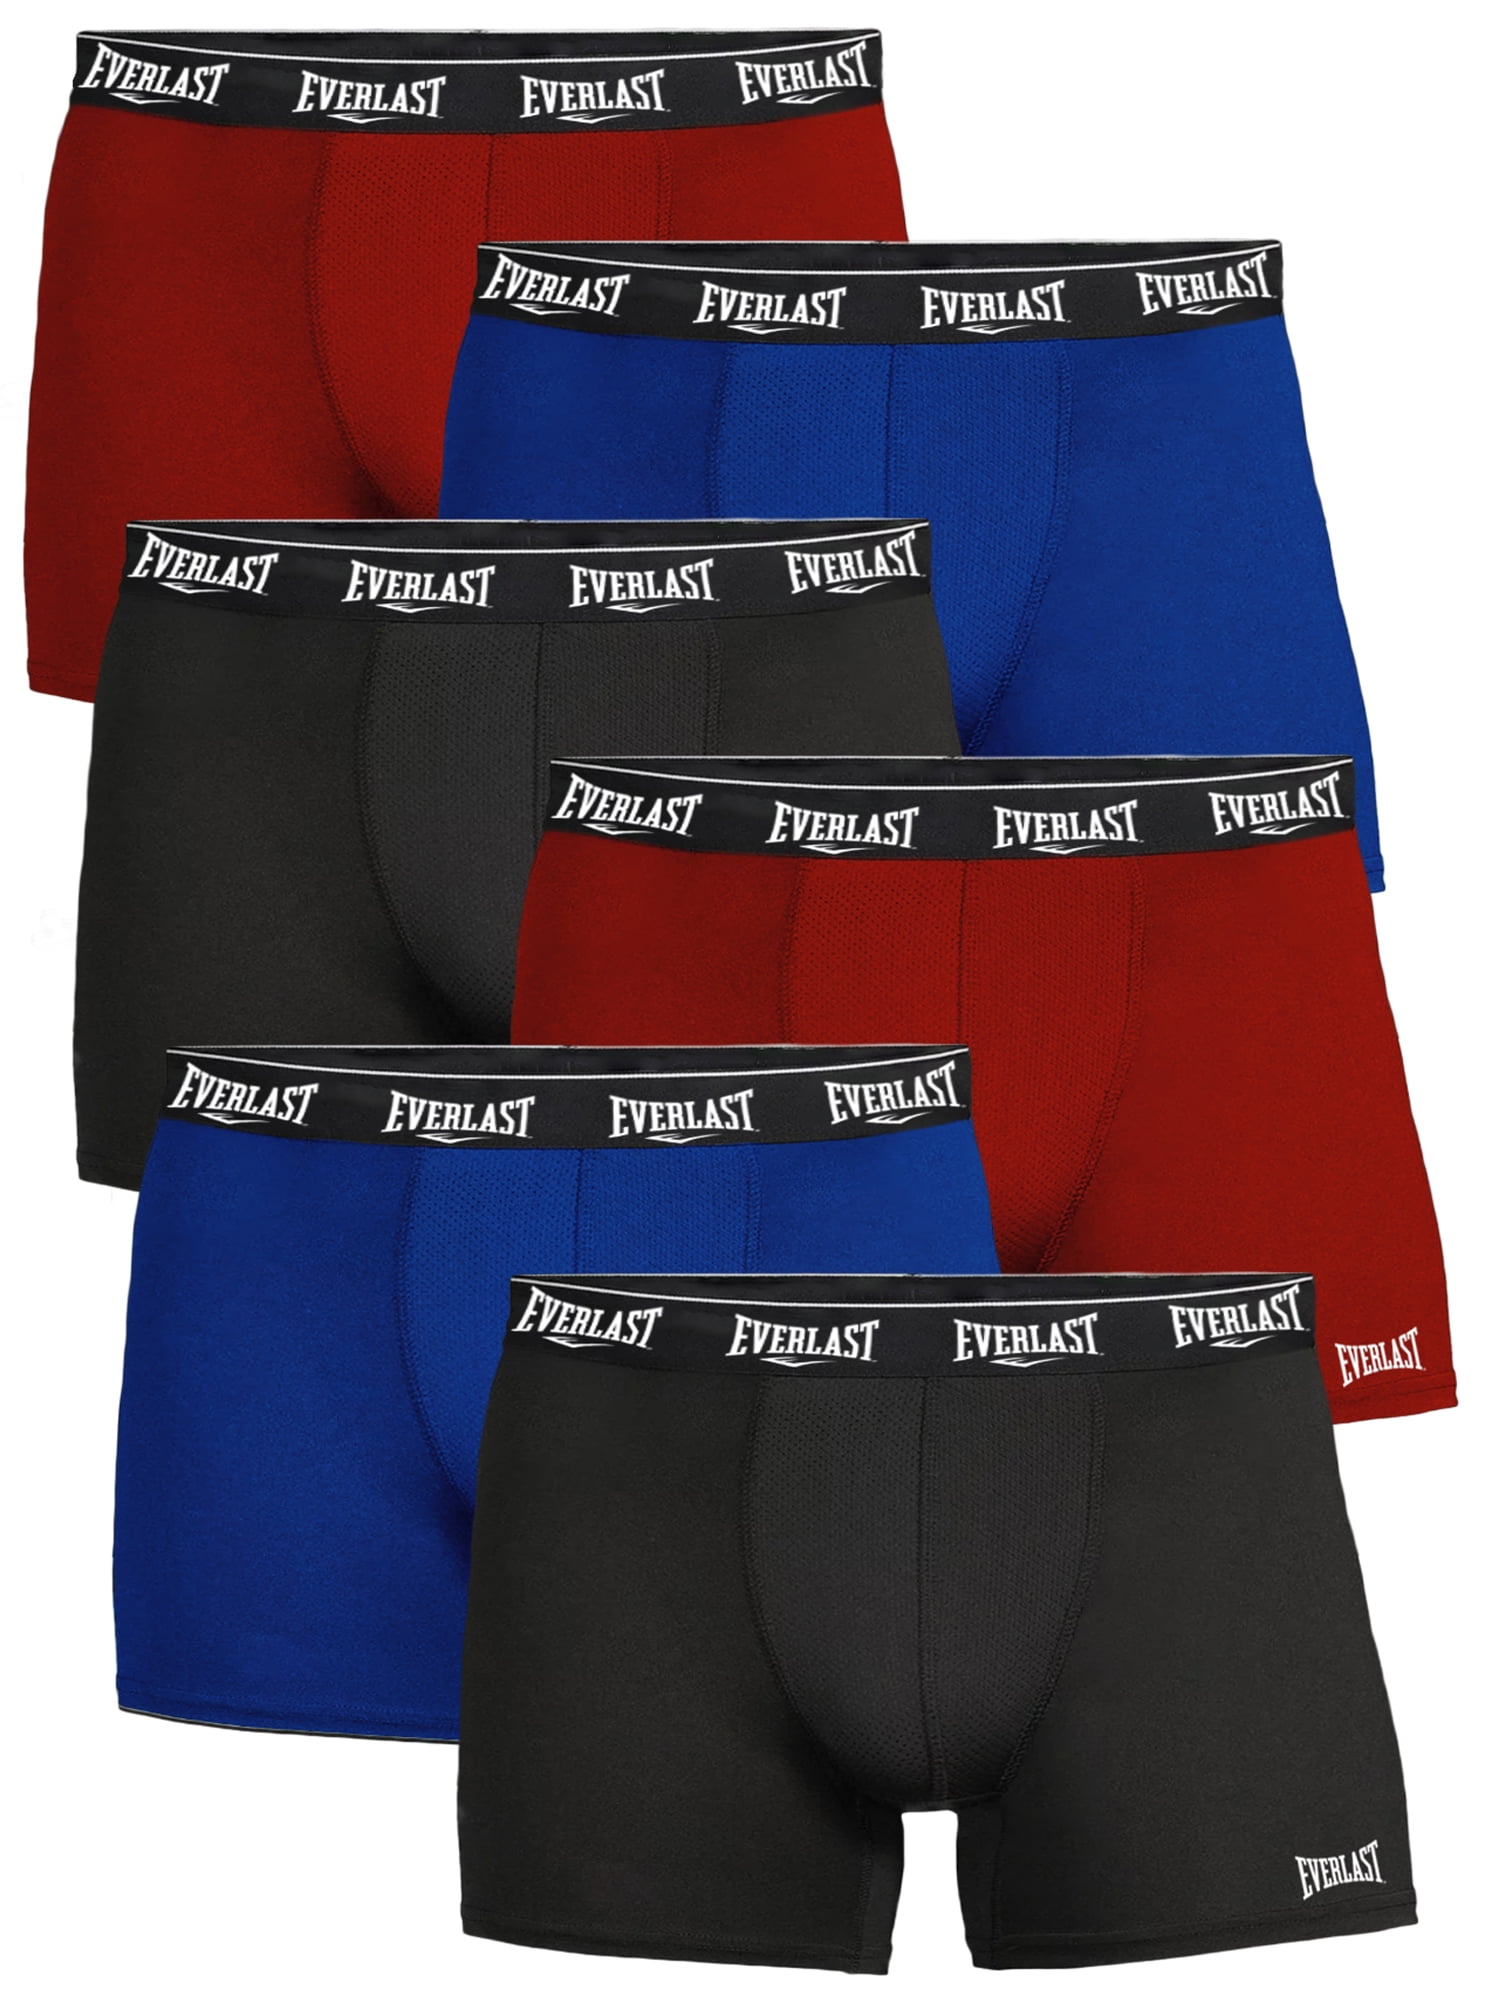 Everlast Men's Trunks Breathable Cotton Underwear Boxers for Men, Black  Medium 6-Pack 